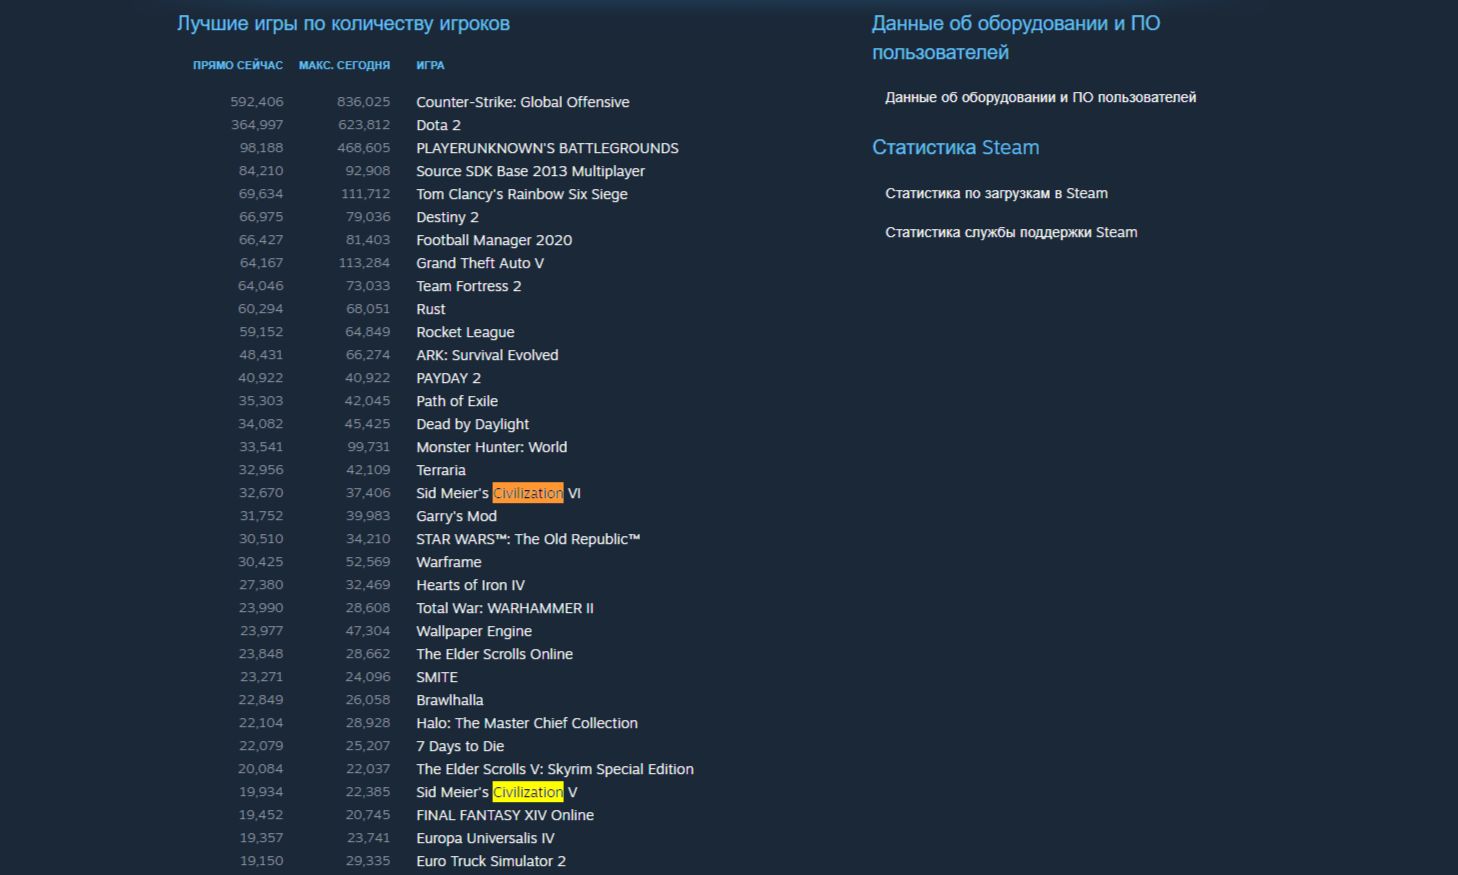 Онлайн Civilization V и VI в Steam в июле 2010 года